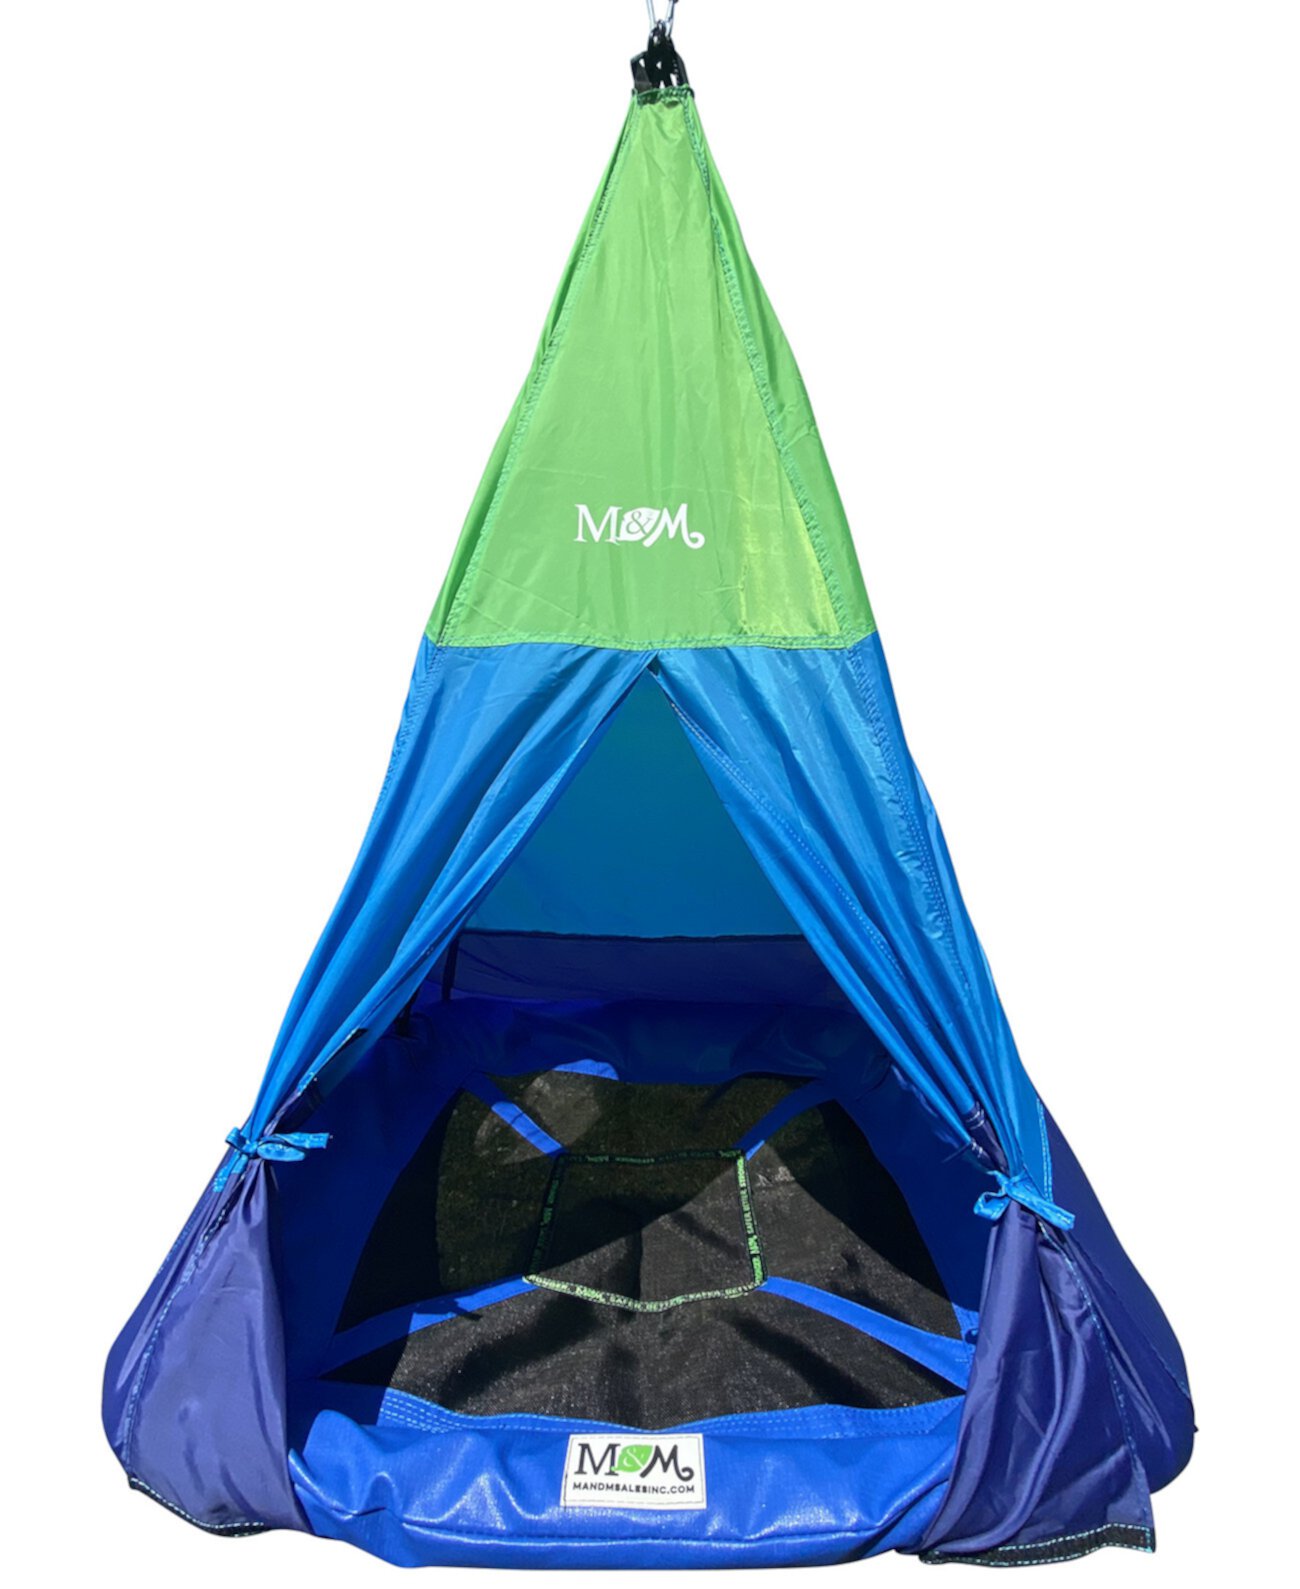 Качели для палатки-типи на открытом воздухе M&M's